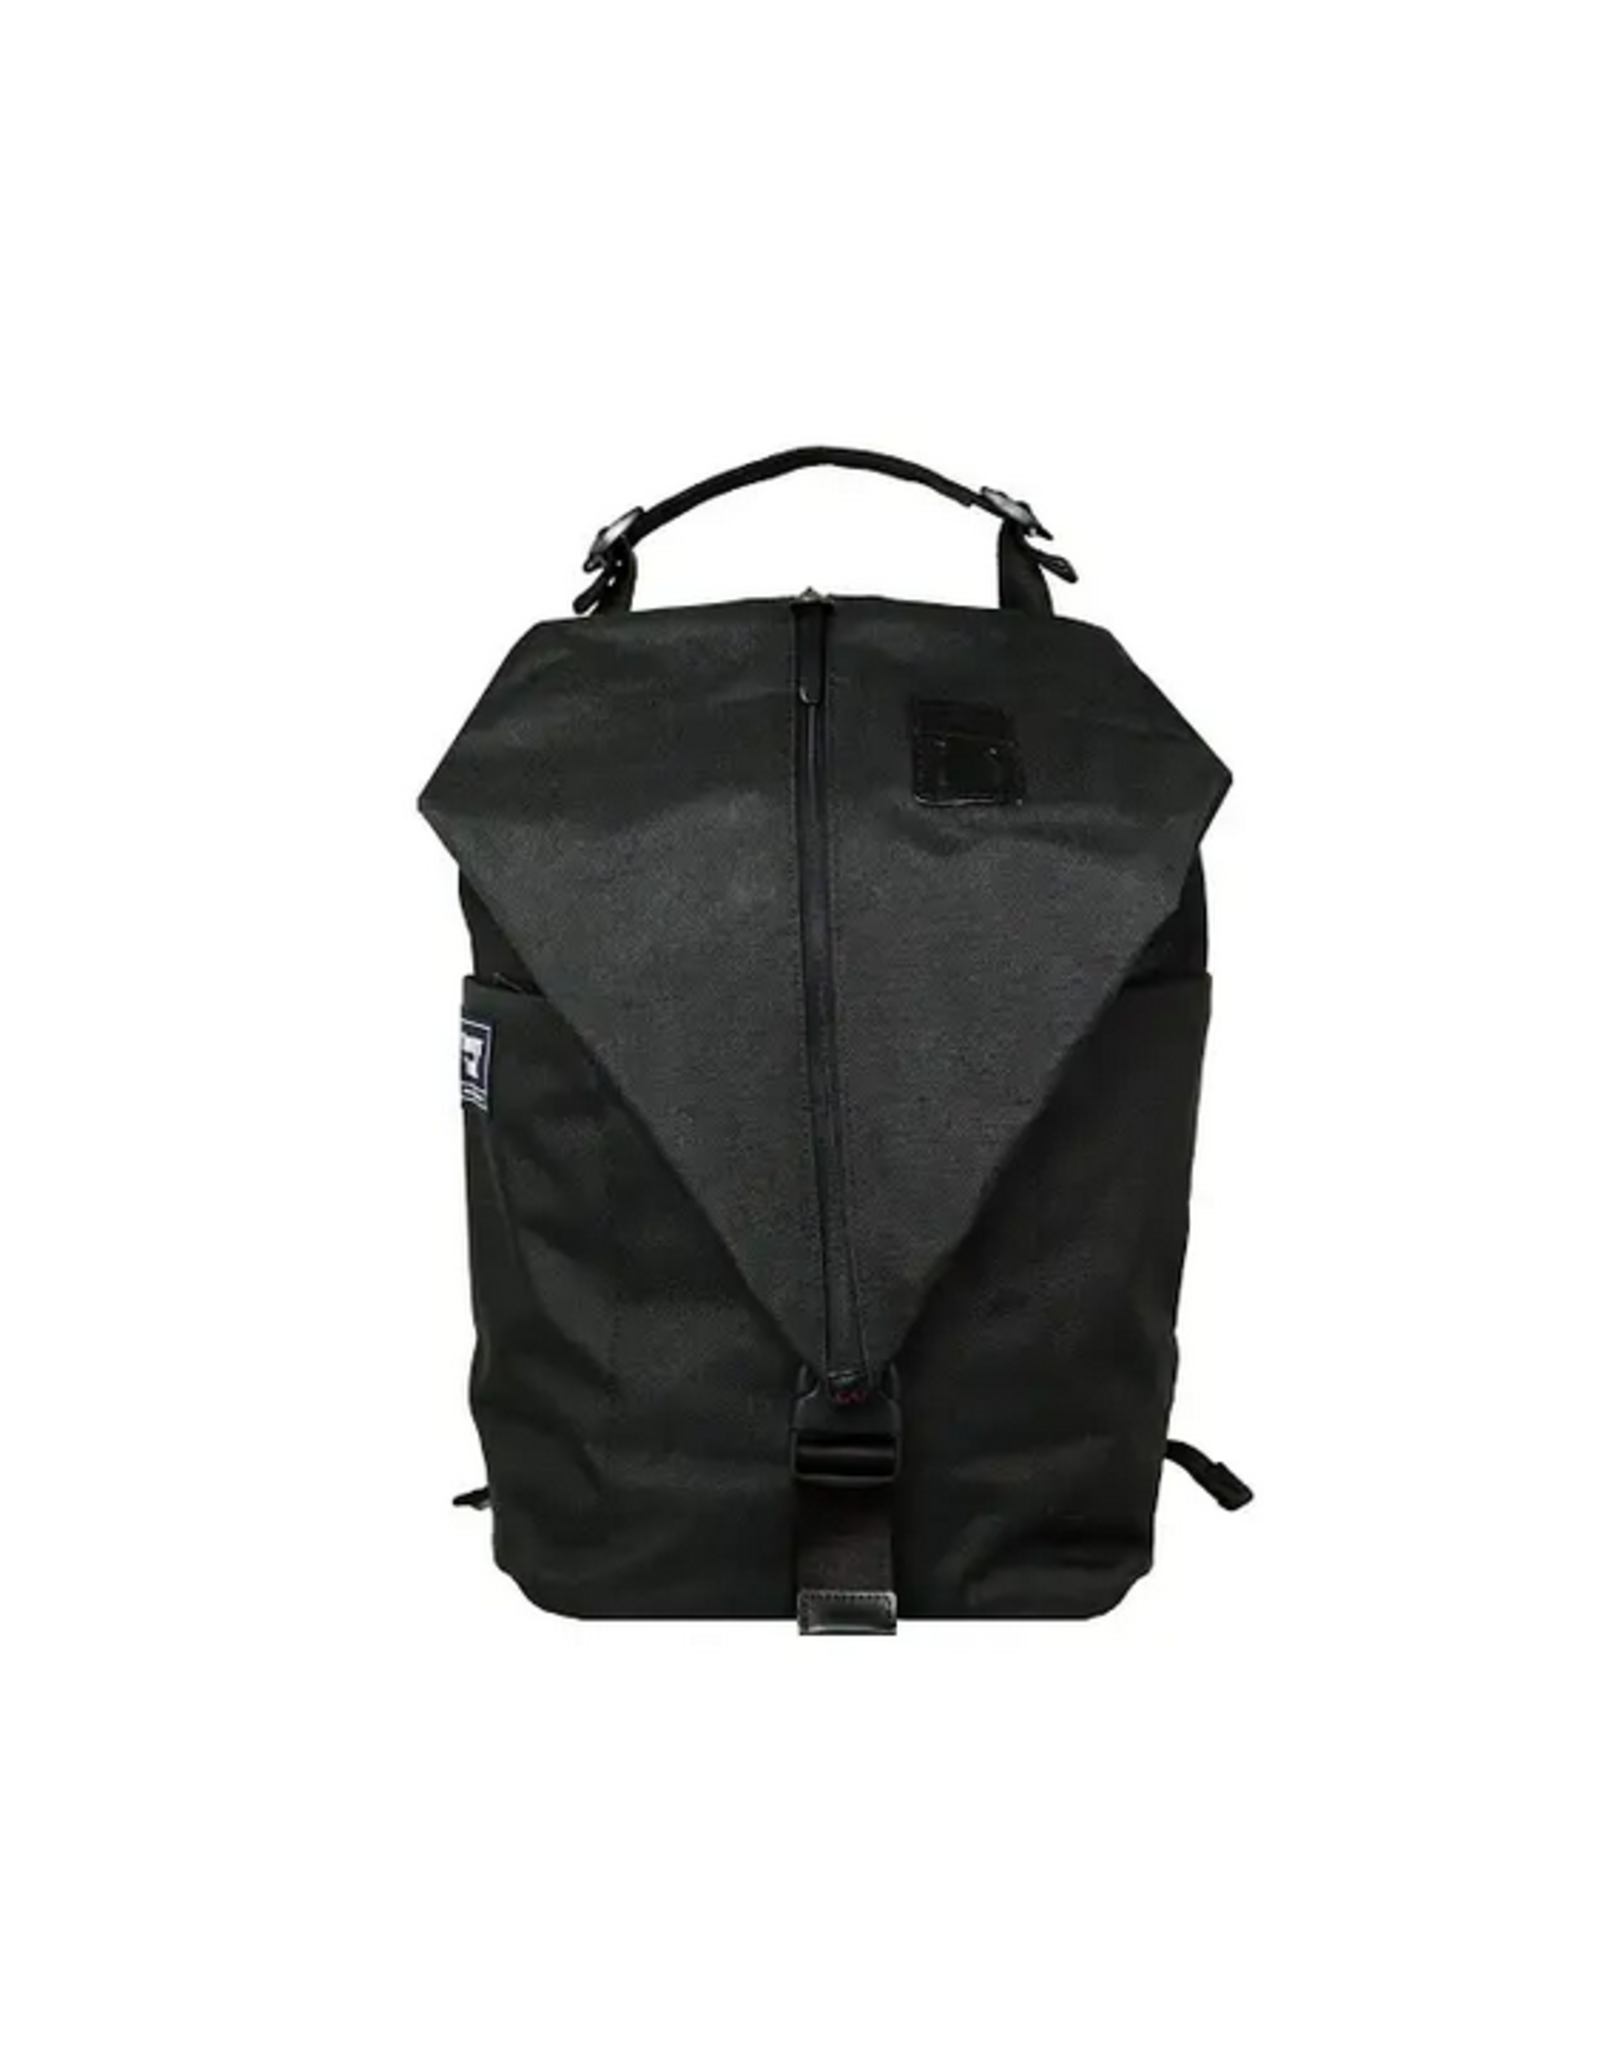 Ravenfold Backpack - Black